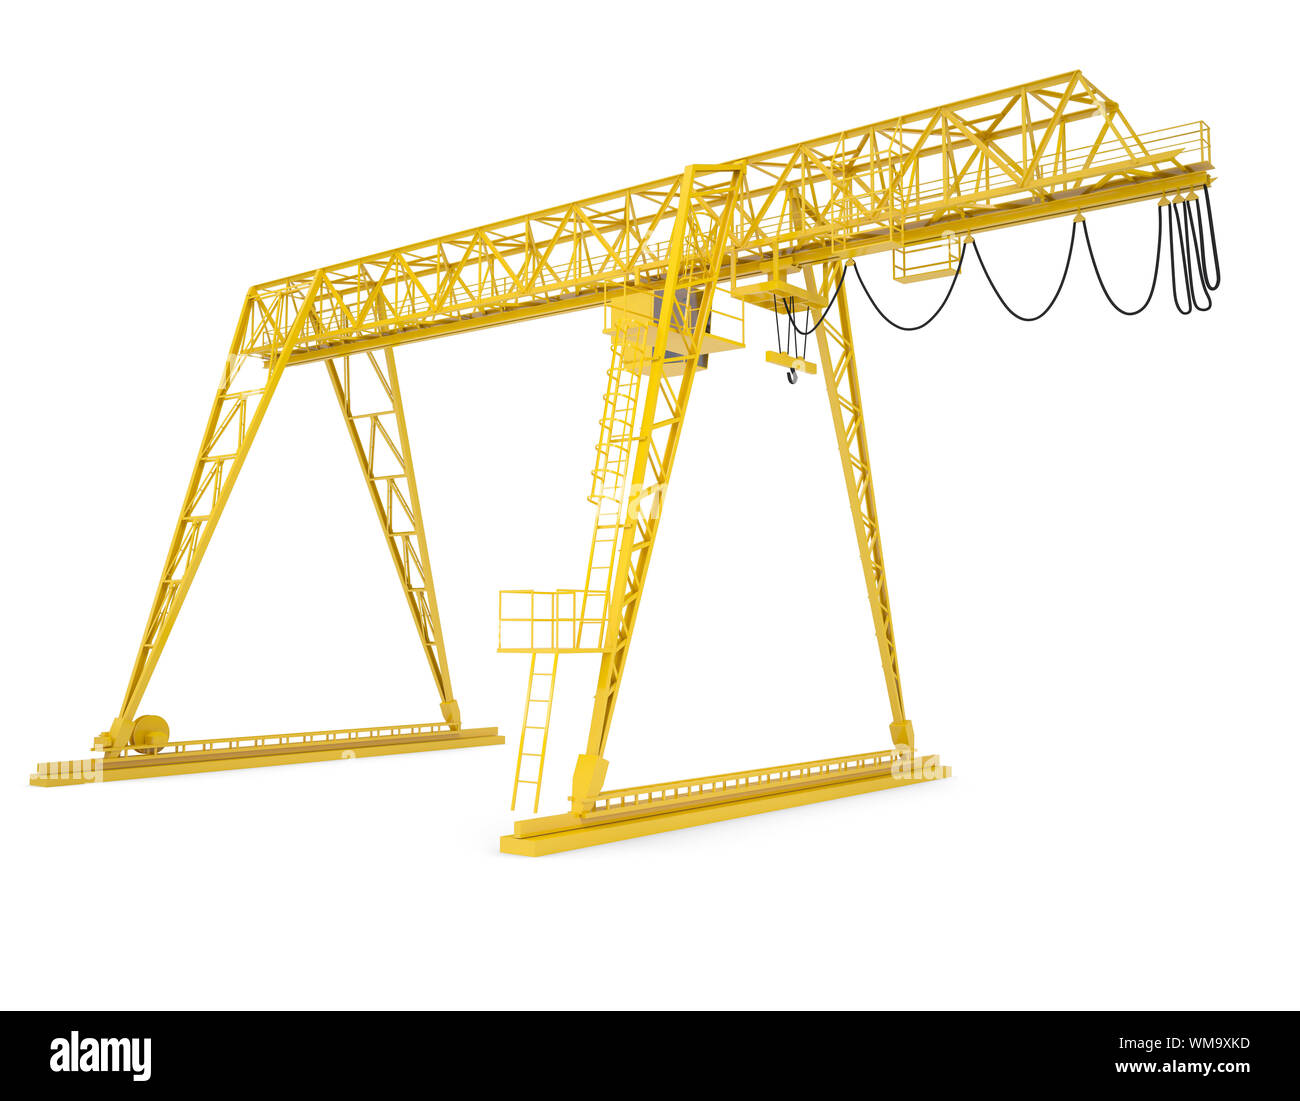 Giallo ponte del gantry crane, semigiro, isolati su sfondo bianco Foto Stock